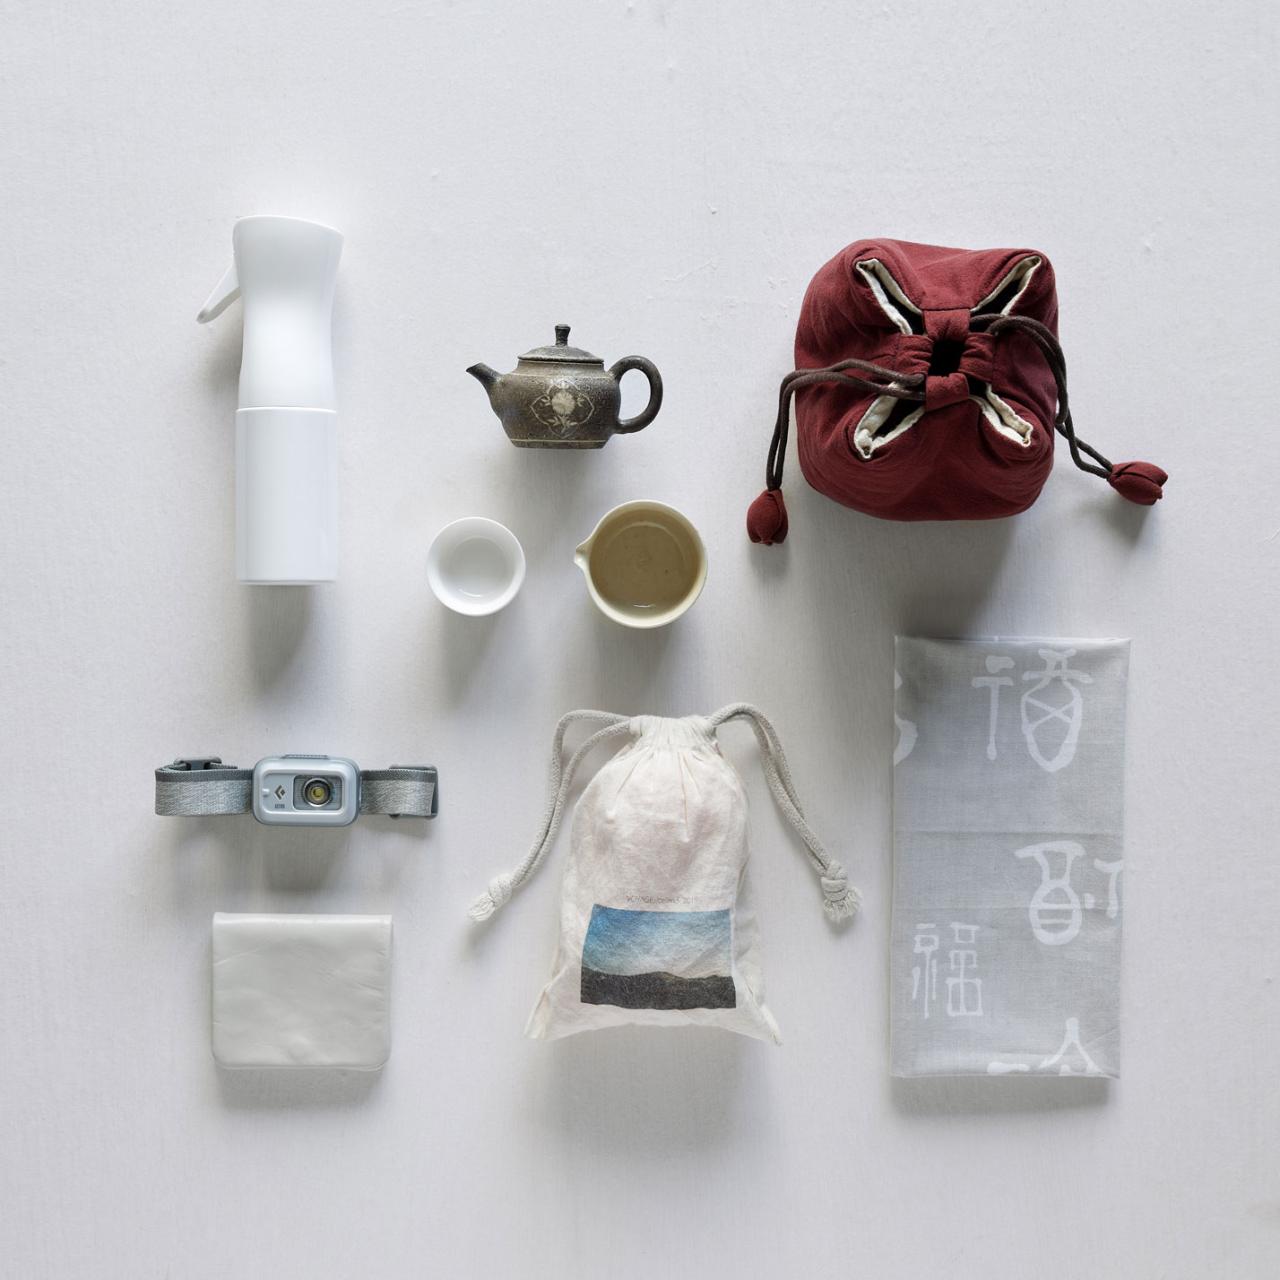 左上から時計回りに、ミストスプレーボトル、中国茶の携帯セット、手拭い、巾着に入れた激ツボール、小さいお財布、早朝参拝用のライト